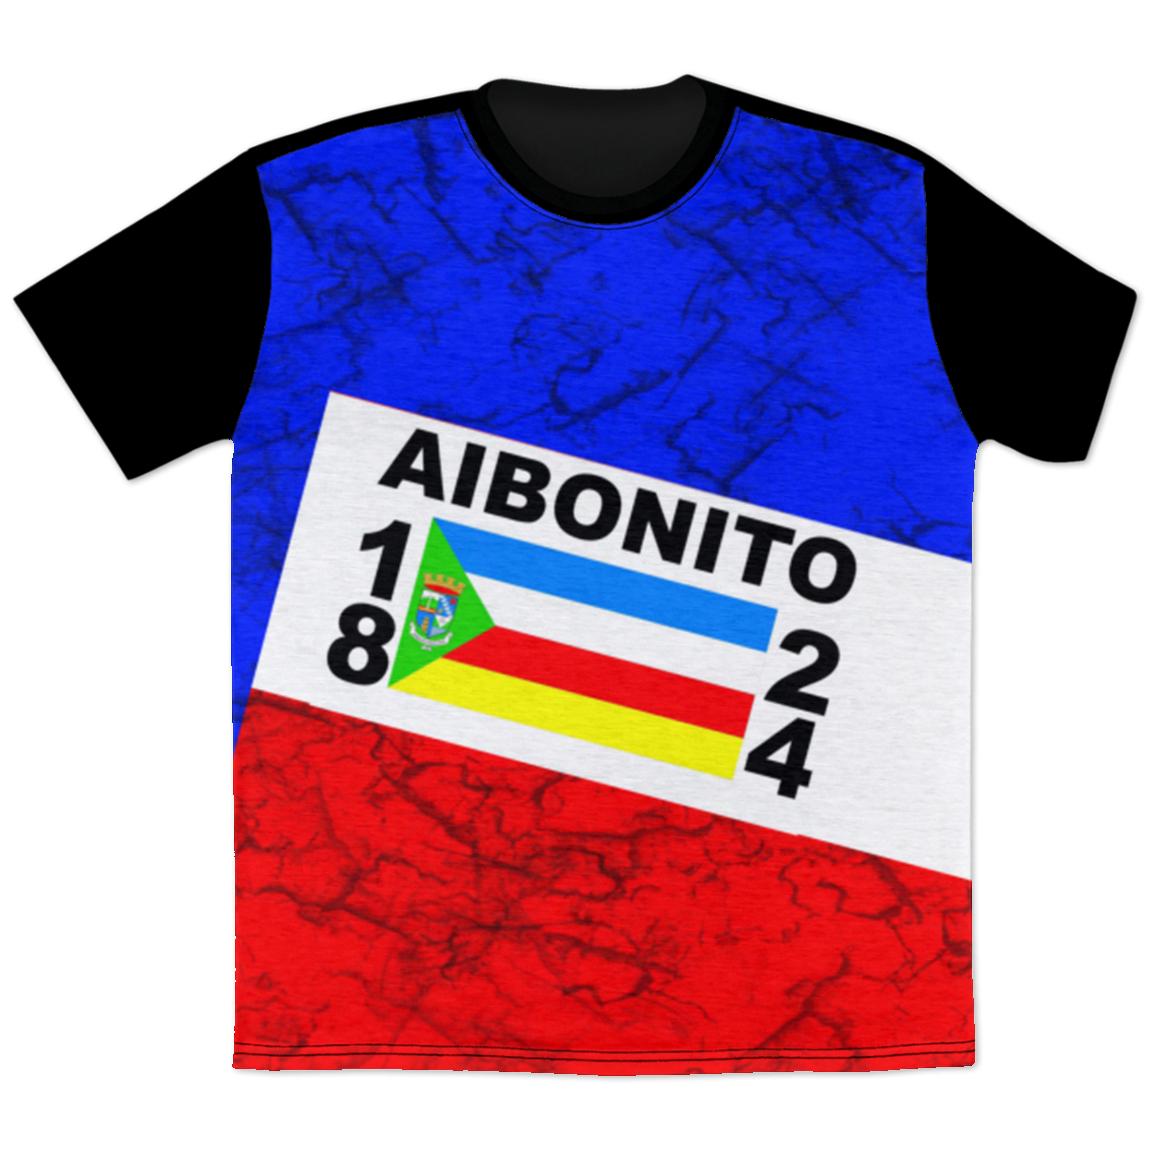 AIBONITO T-Shirt - Puerto Rican Pride